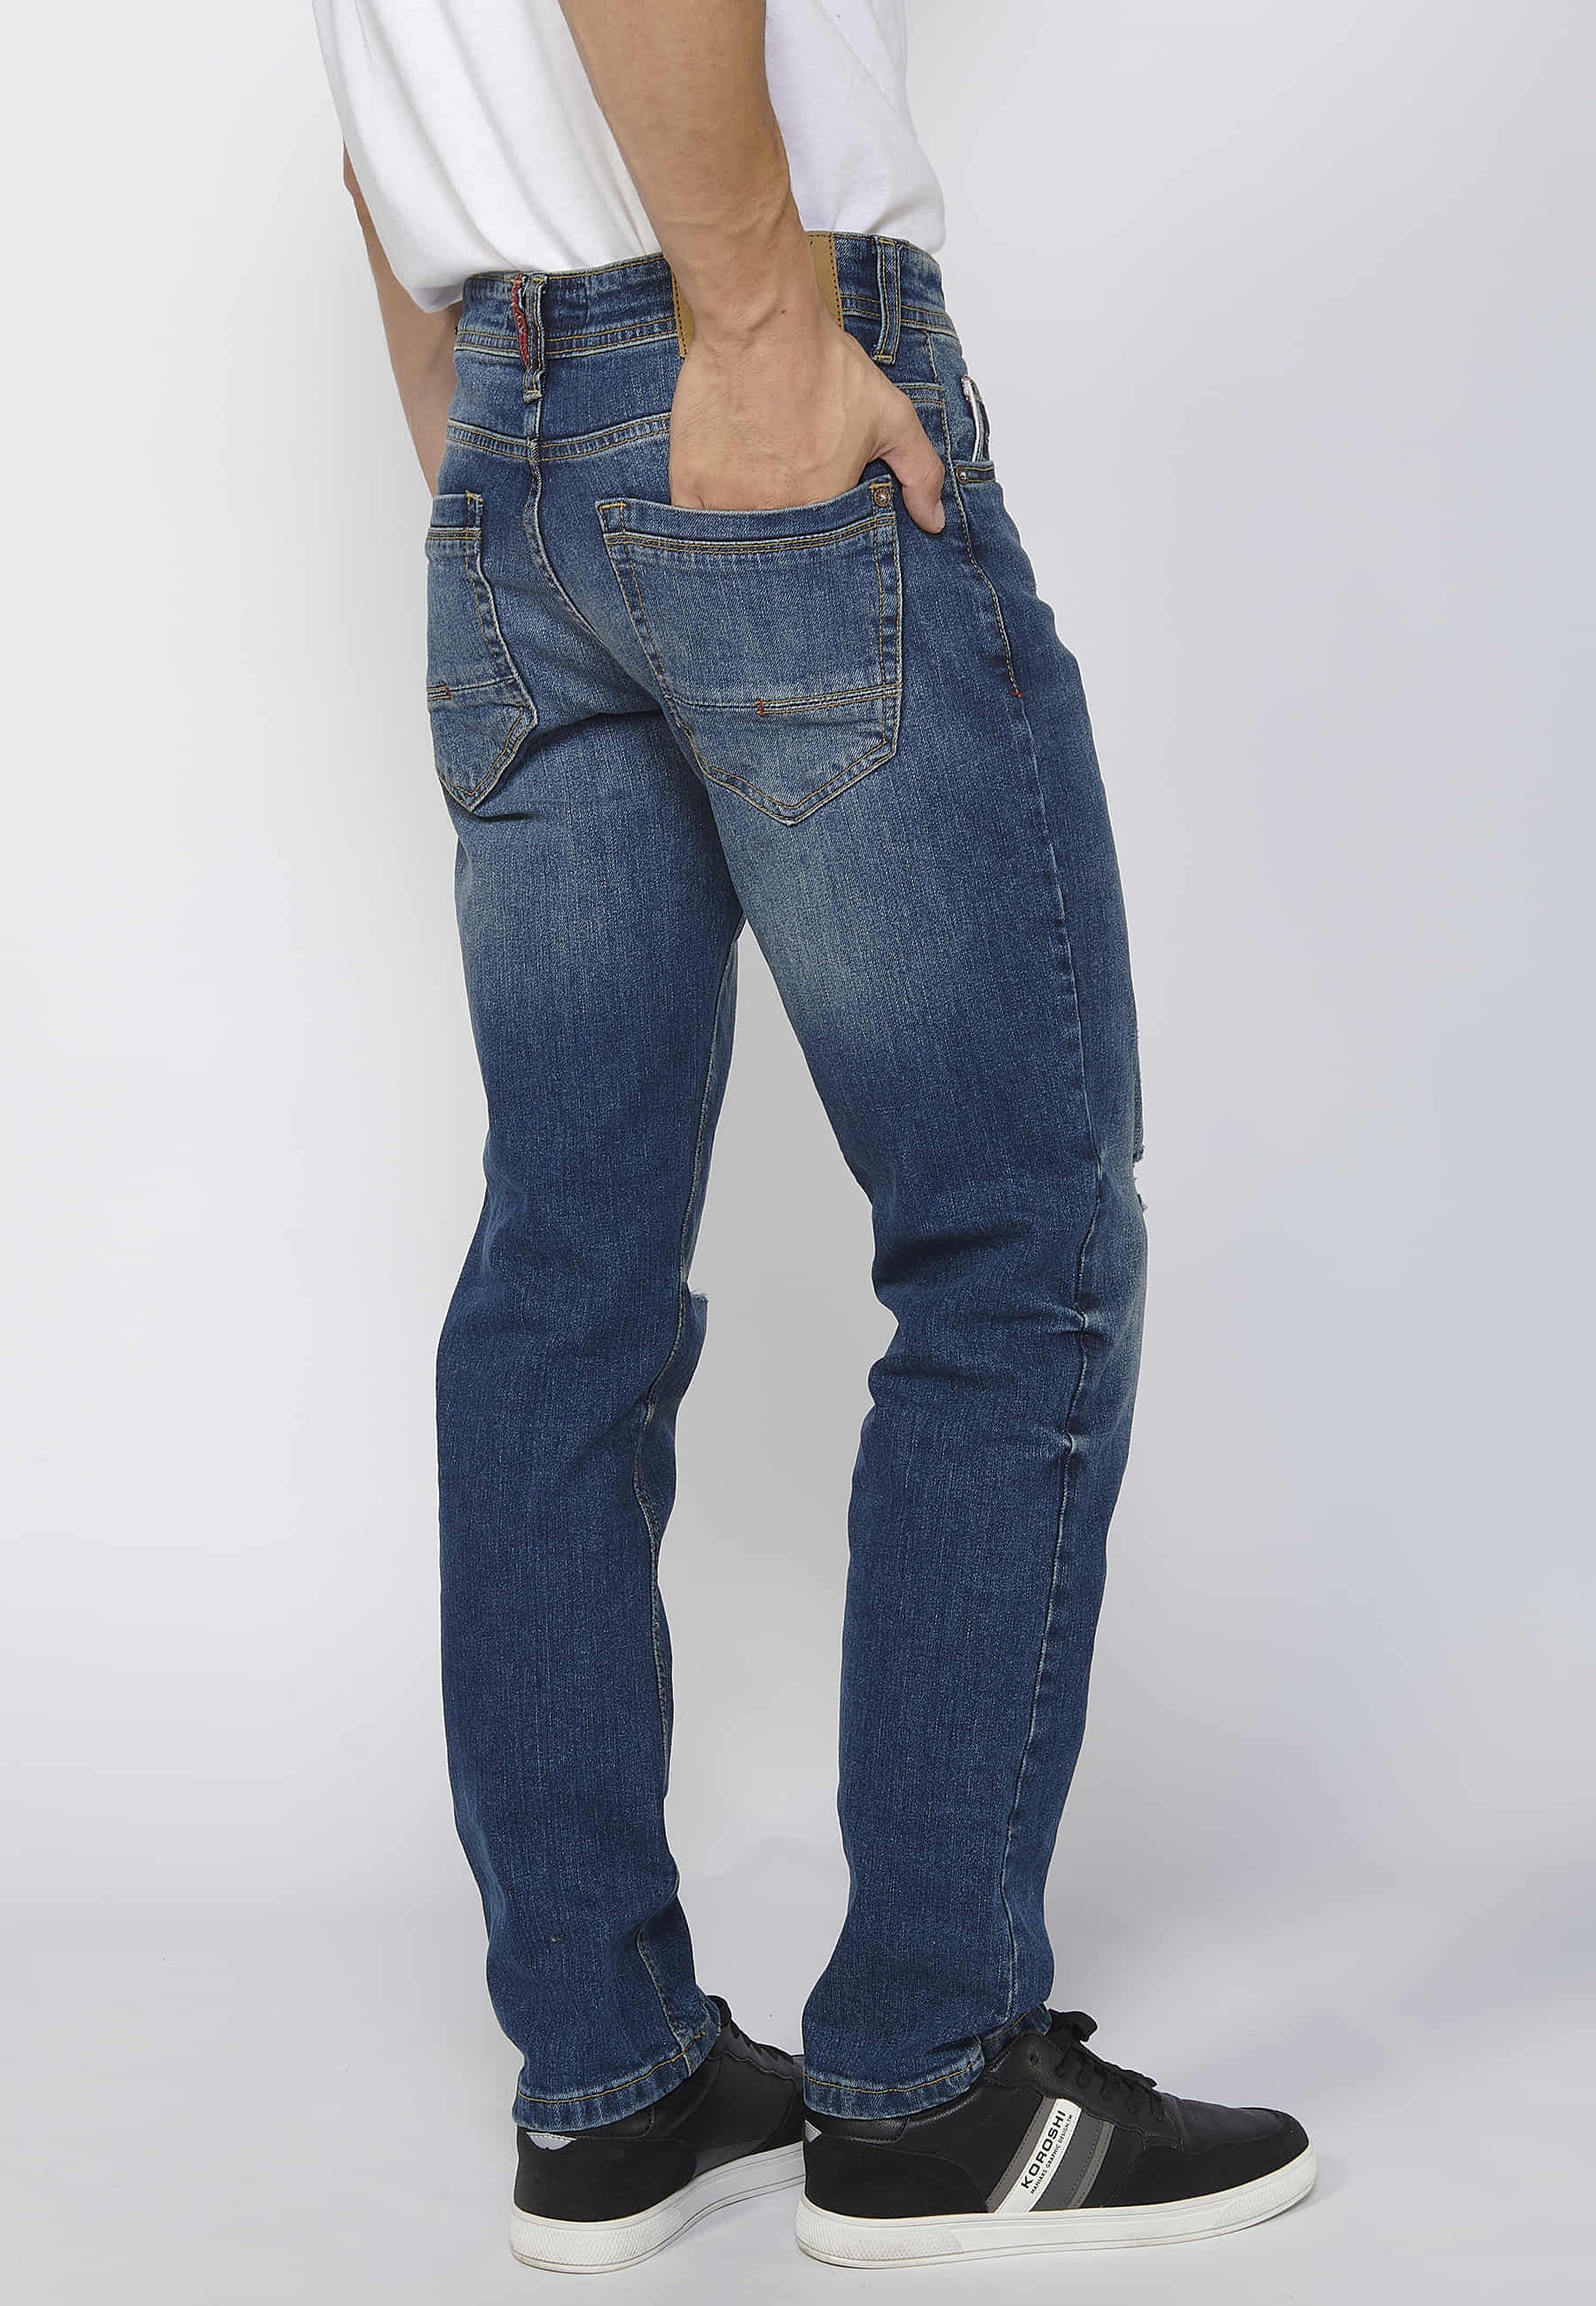 Pantalons llargs denim straigtht regular fit amb tancament davanter amb cremallera i botó color blau per a Home 5